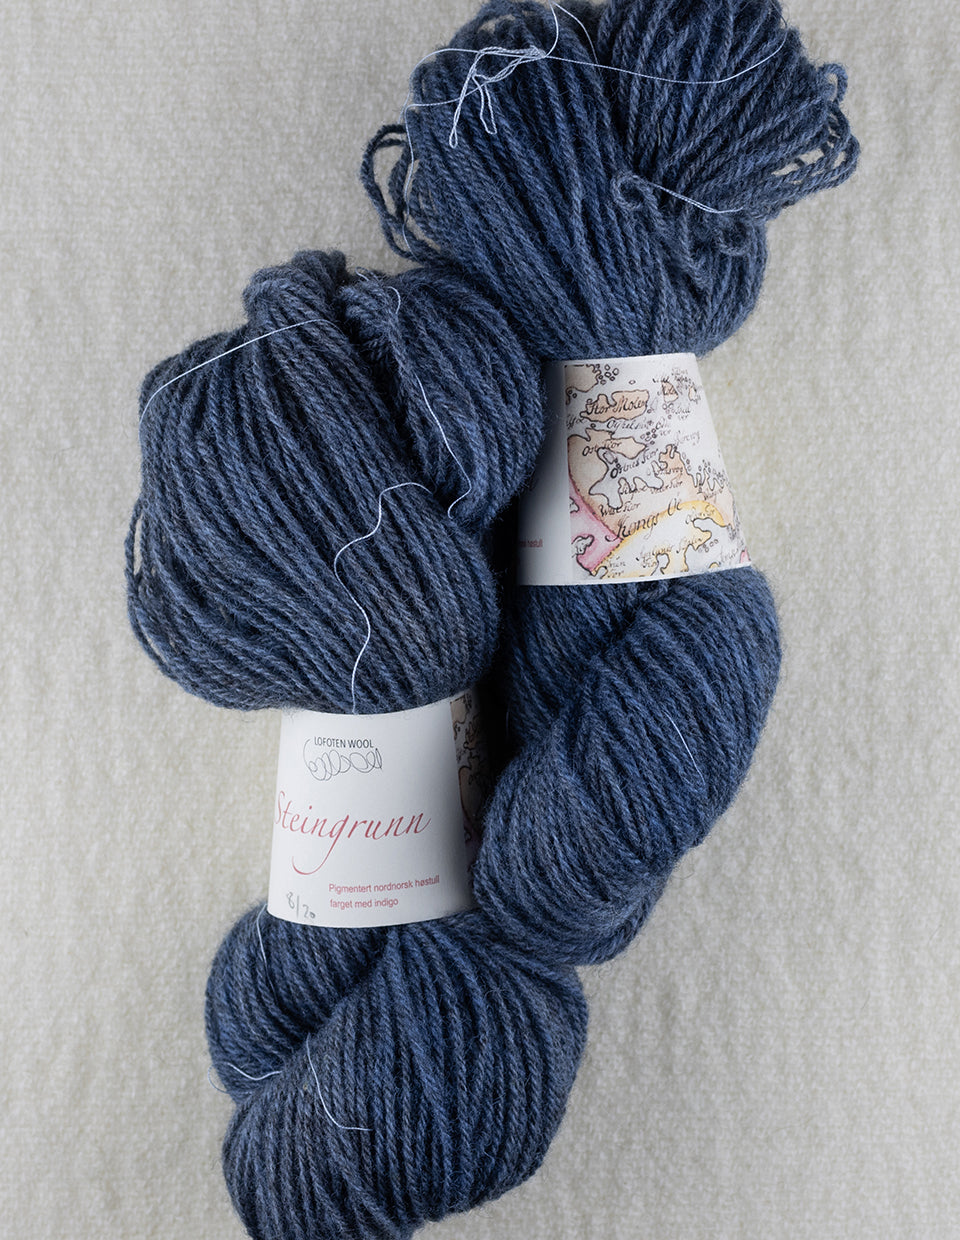 Blekksopp beanie plant dyed, knitting kit